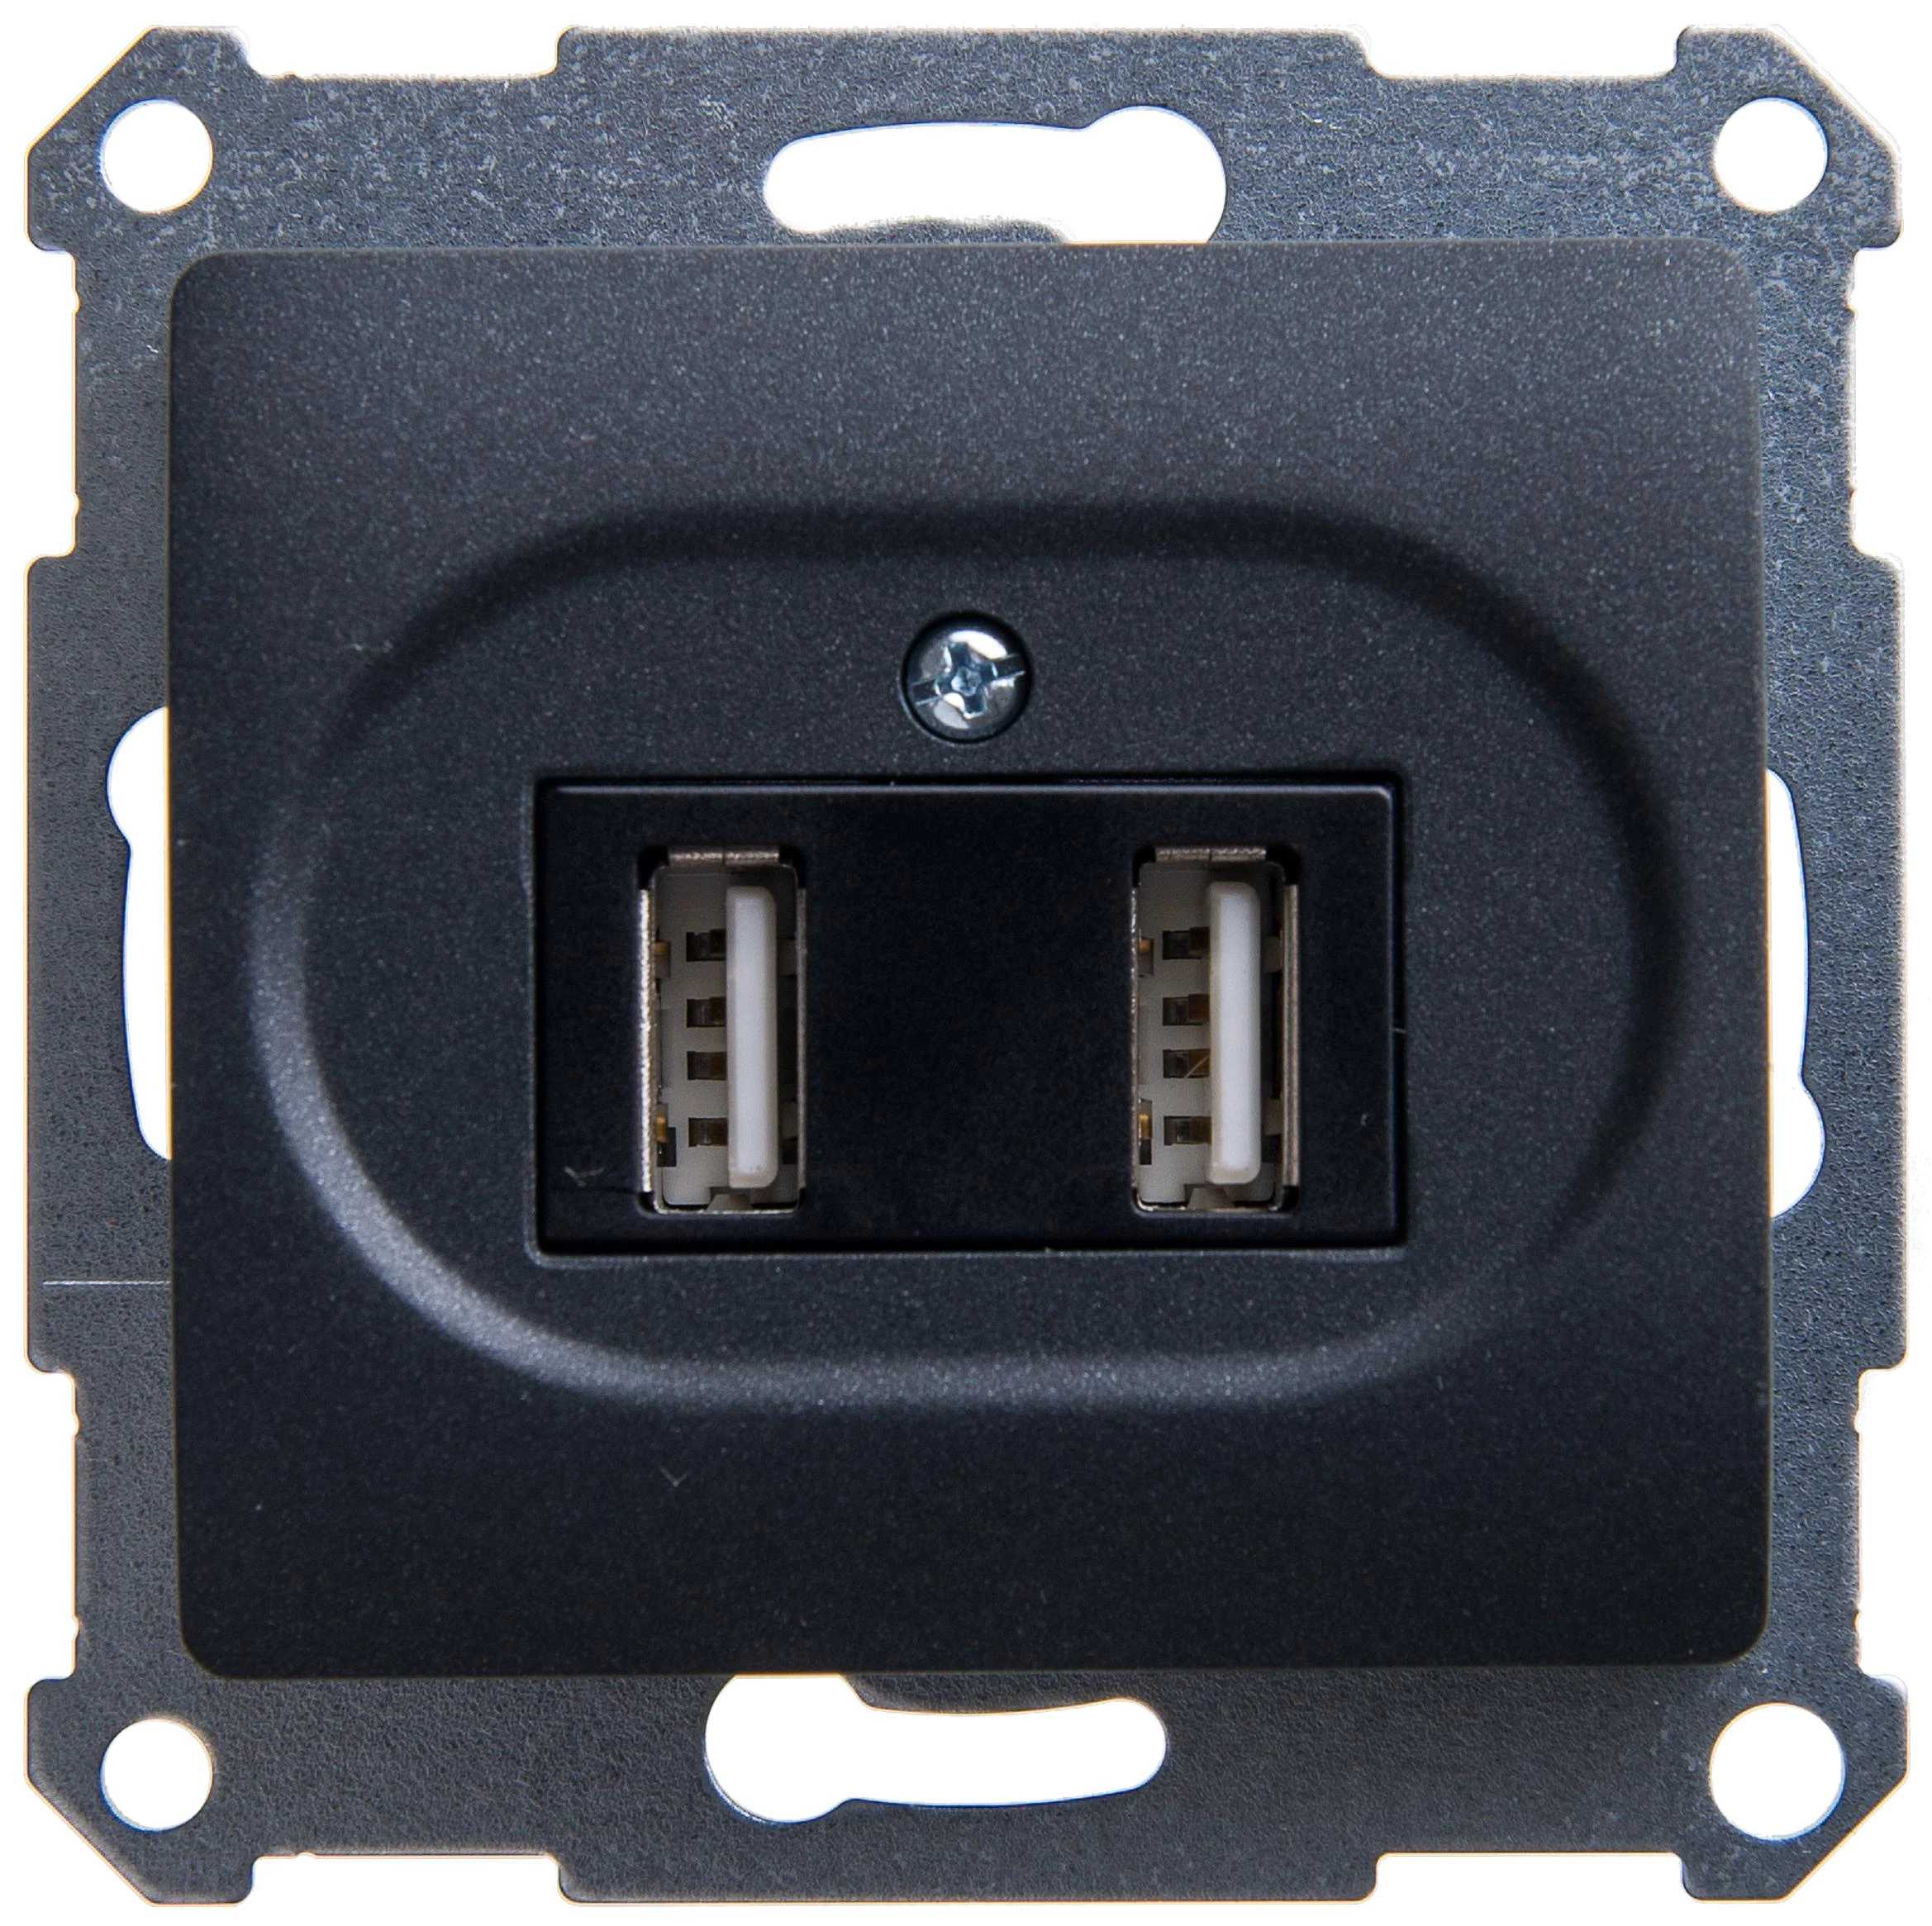  артикул GSL000733 название Зарядное устройство USB с двумя выходами 2100 мА , Антрацит, серия Glossa, Schneider Electric